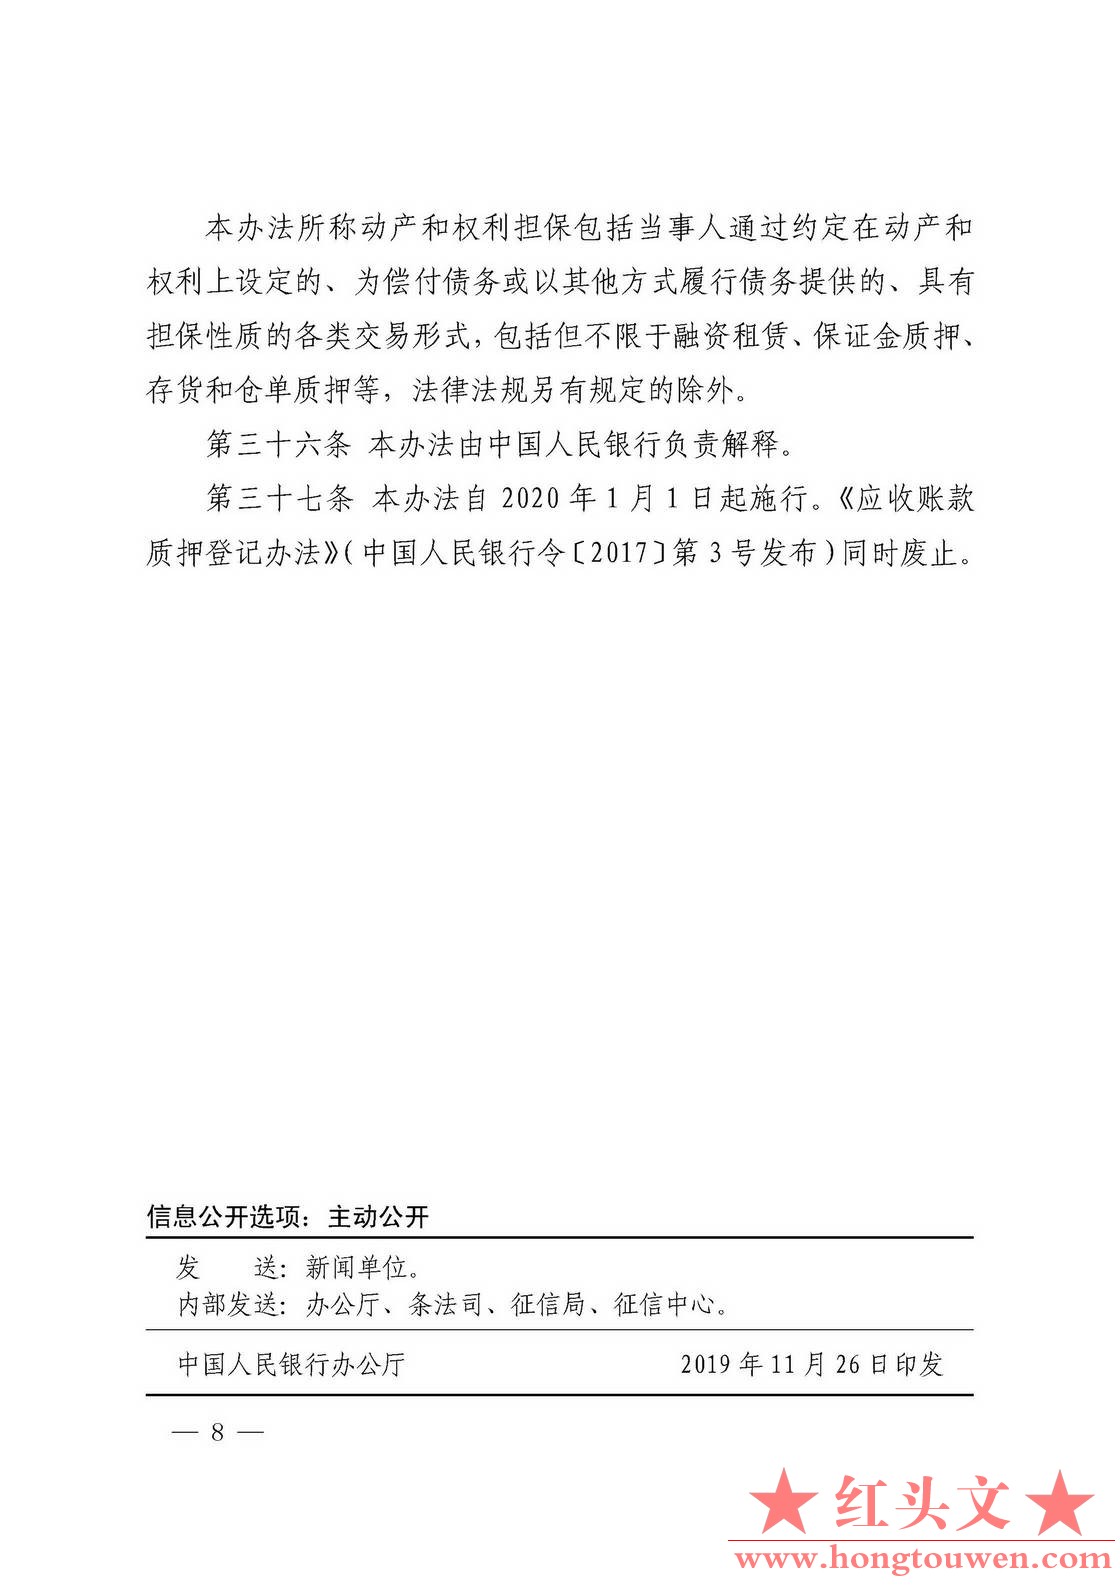 中国人民银行令[2019]第4号-应收账款质押登记办法_页面_8.jpg